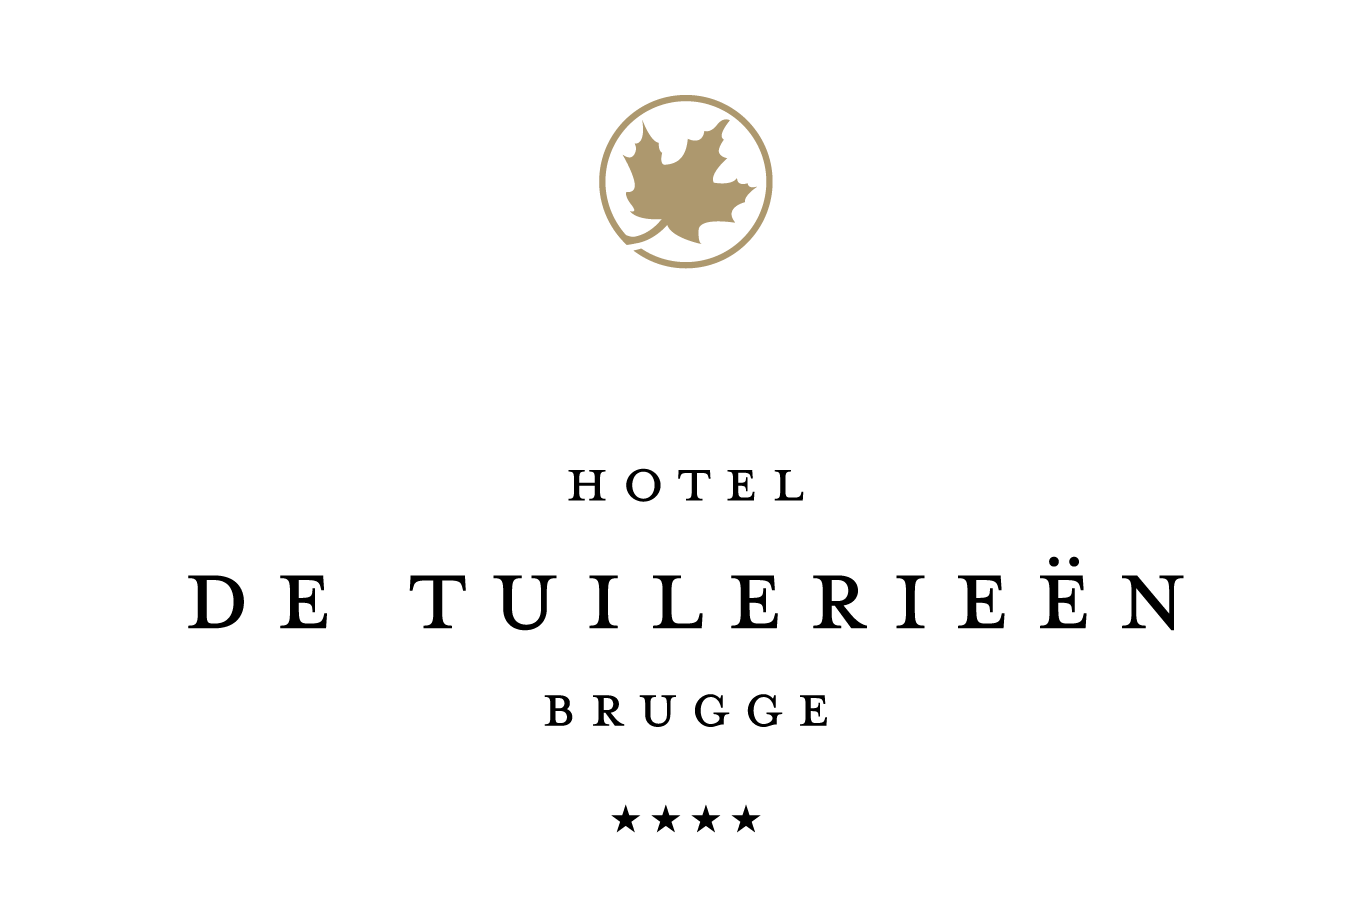 Hotel De Tuilerieën